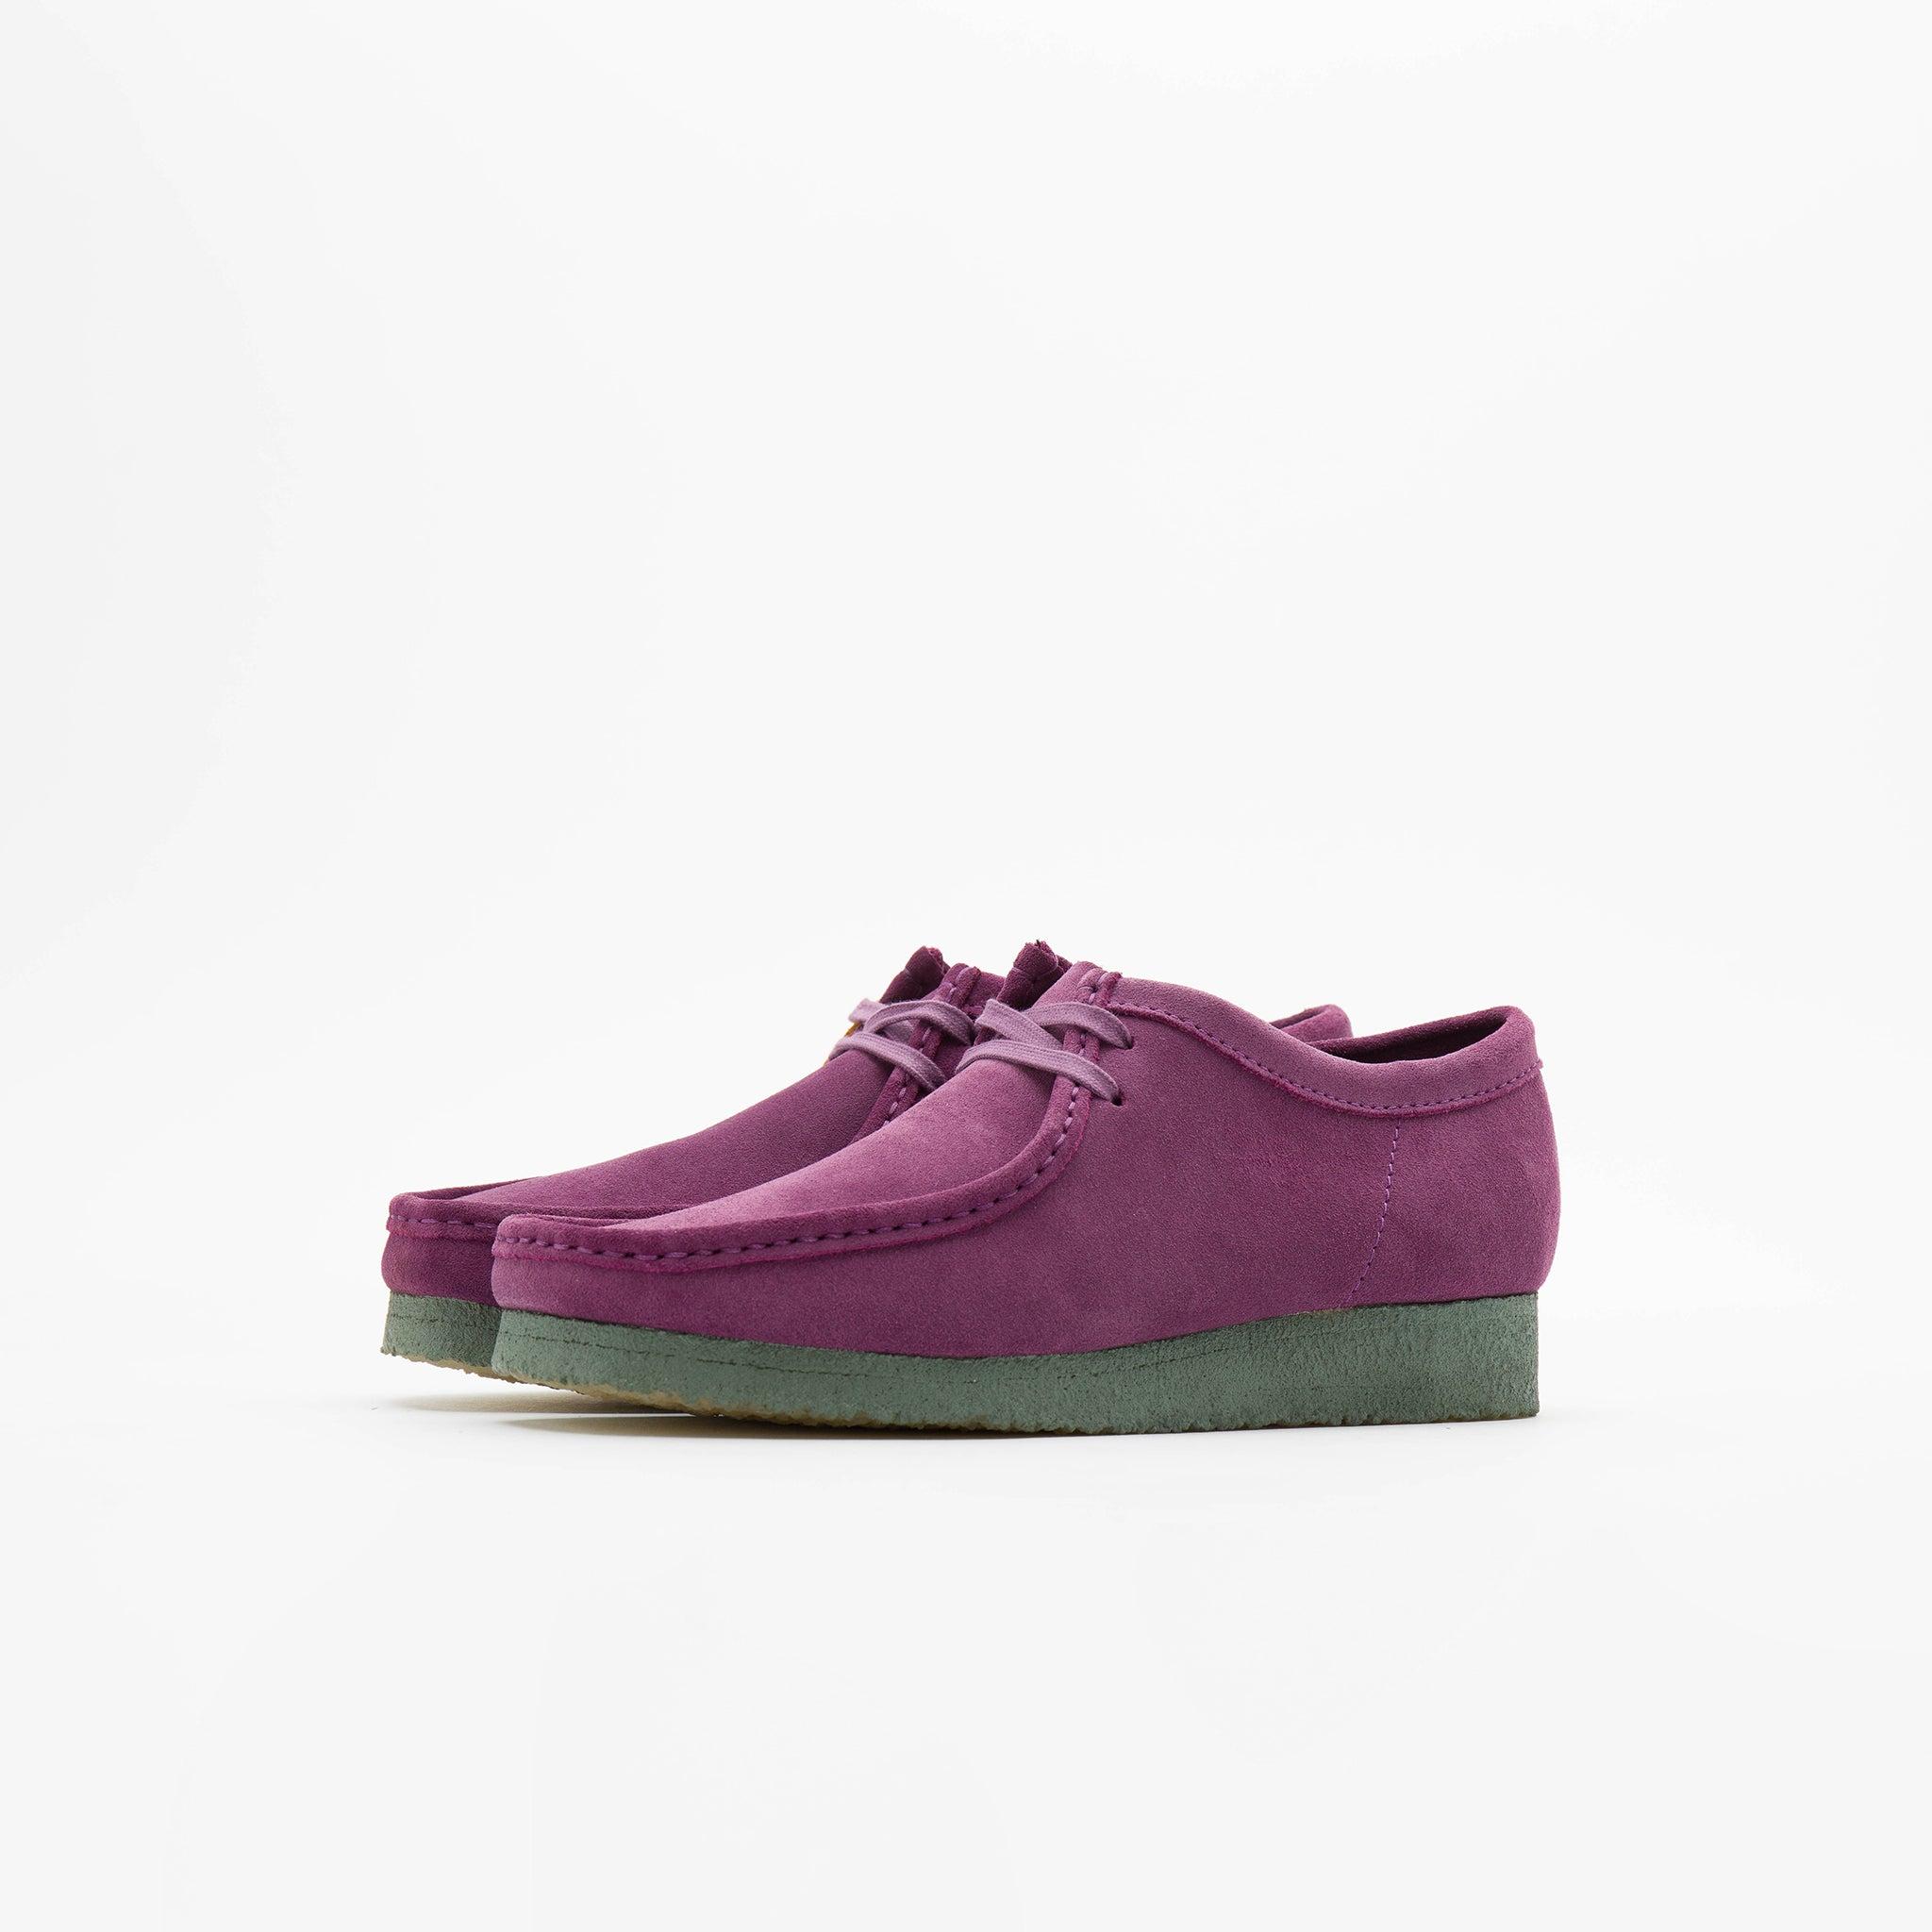 Clarks Suede Wallabee Shoe in Purple/Green (Purple) for Men | Lyst